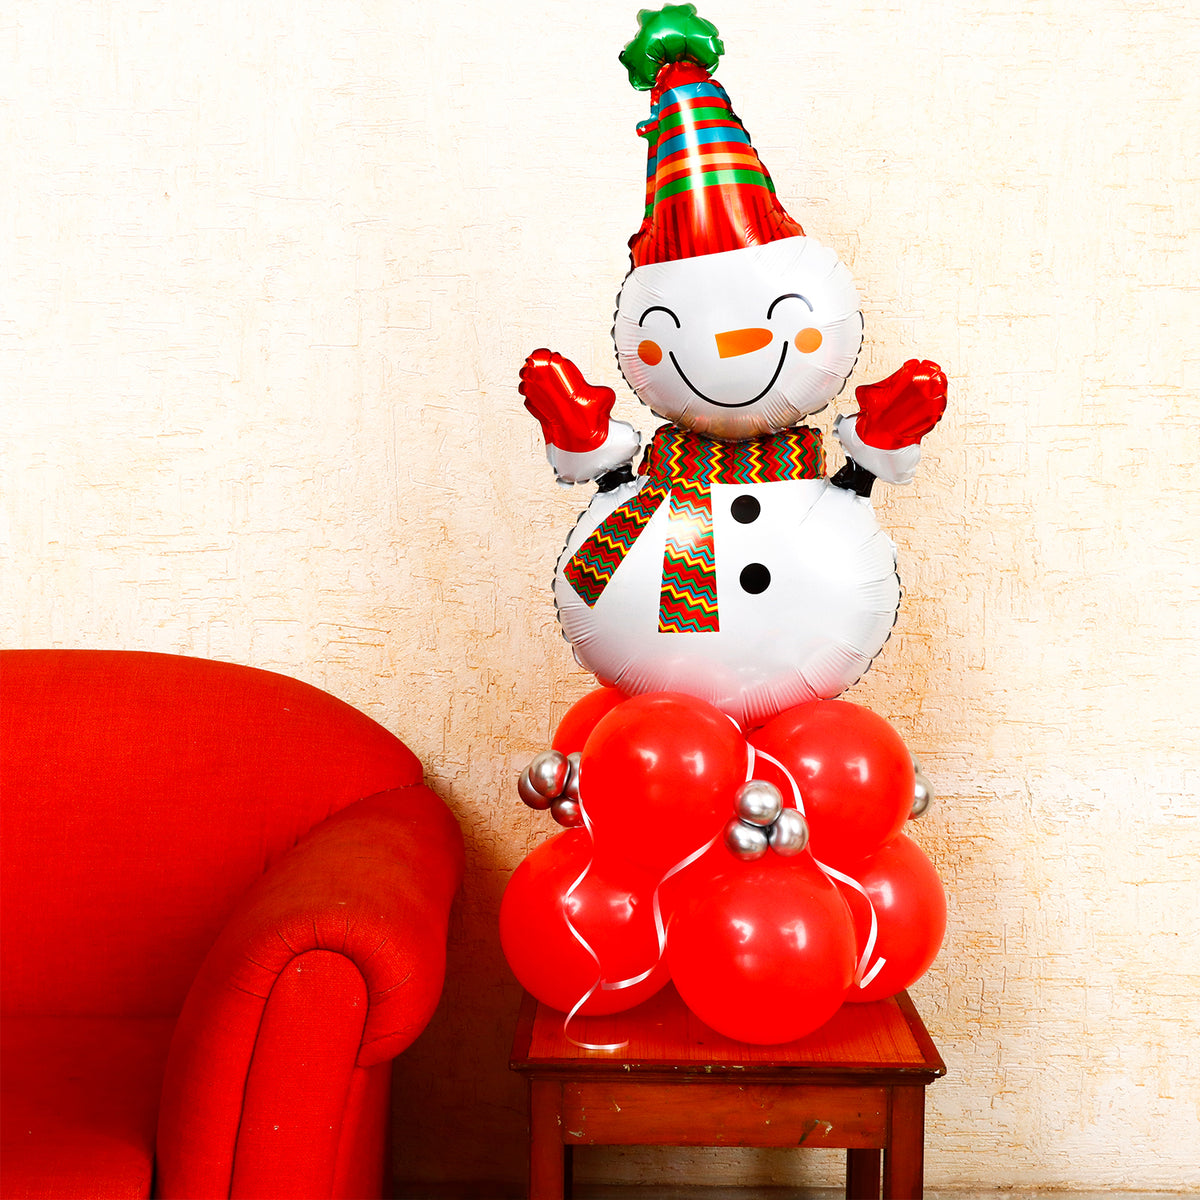 Snowman Balloon Décor